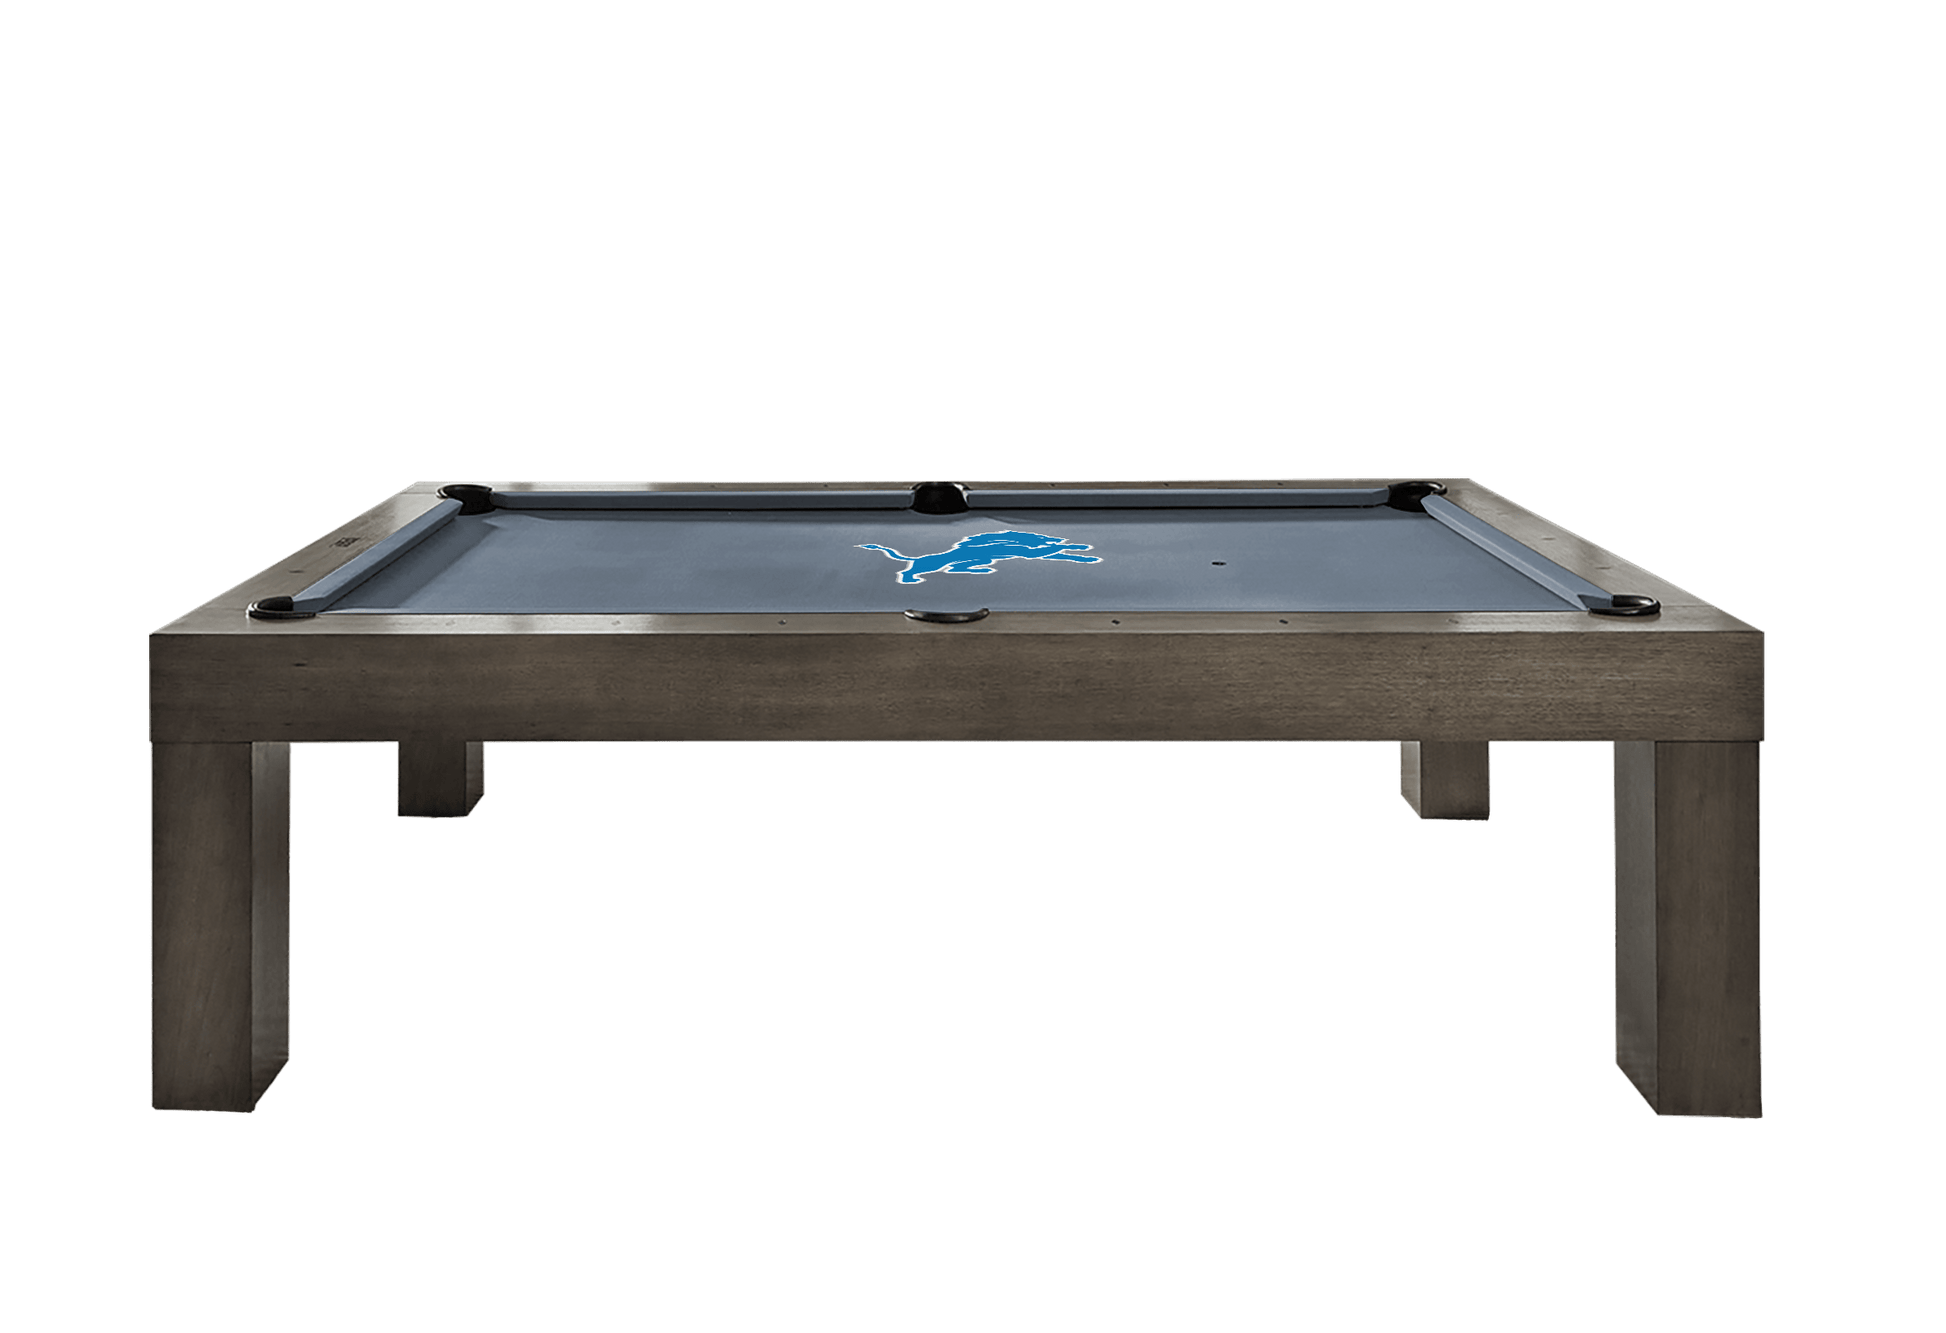 Detroit Lions Premium Pool Table Bundle - Charcoal Pool Bundle Home Arcade Games   